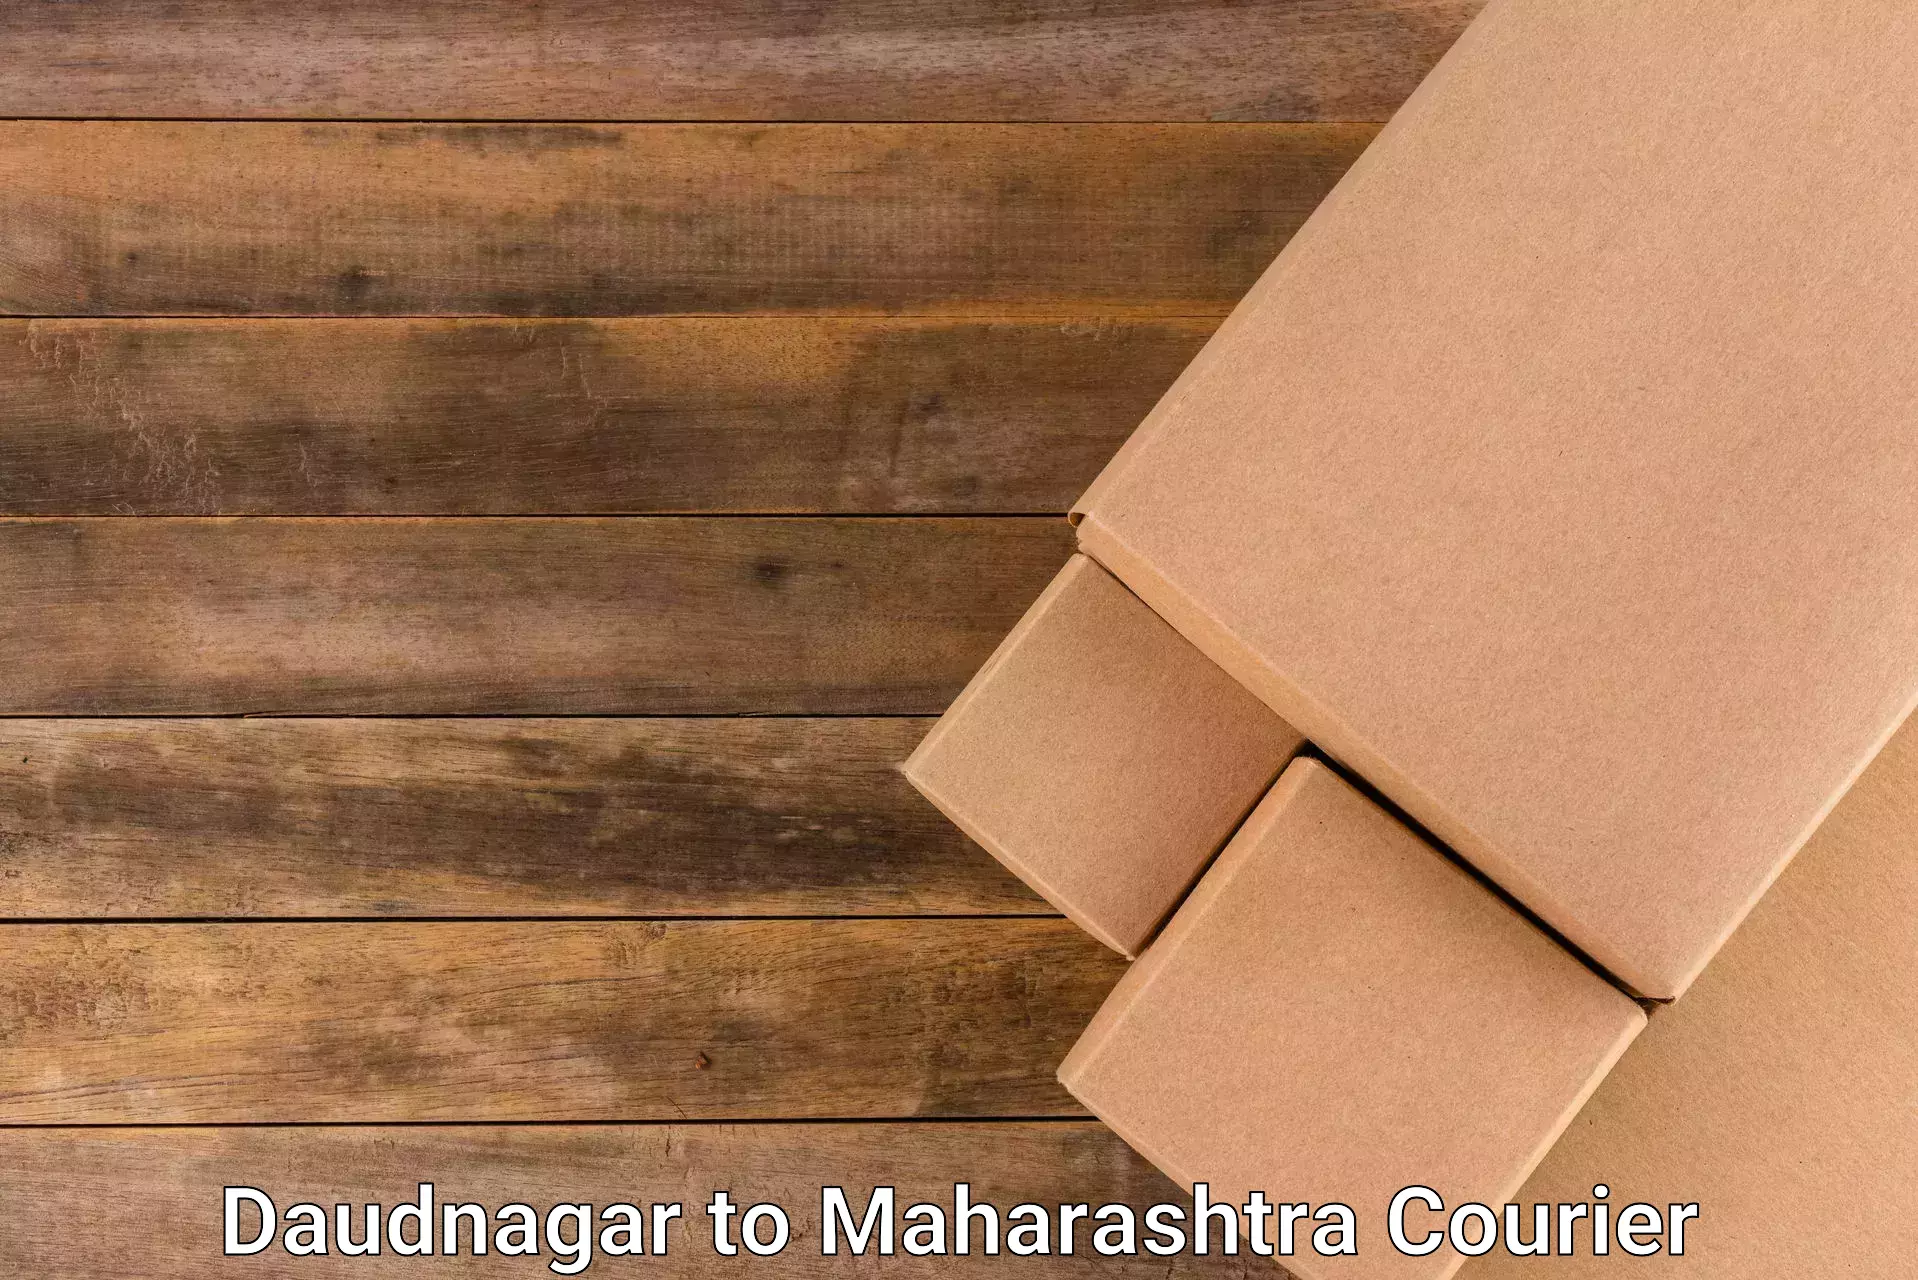 Courier service partnerships Daudnagar to Rajapur